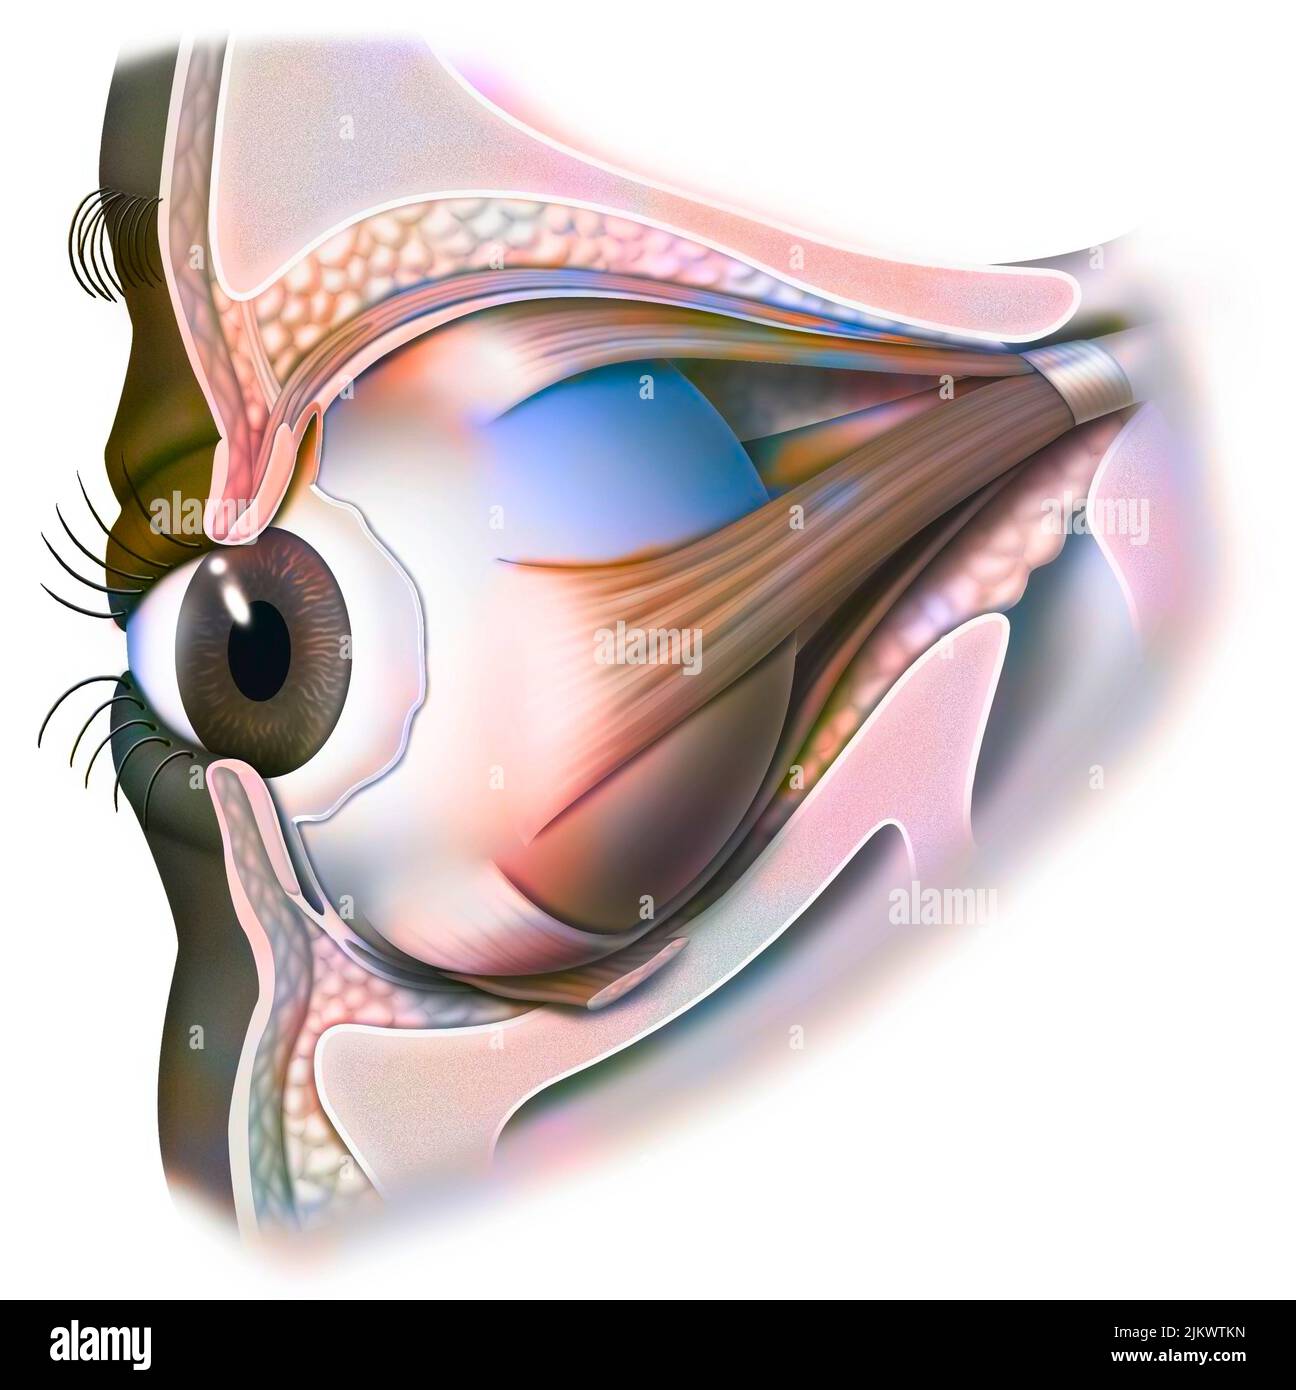 Anatomia dell'occhio e della palpebra (vista dal 3/4) con iride, pupilla. Foto Stock